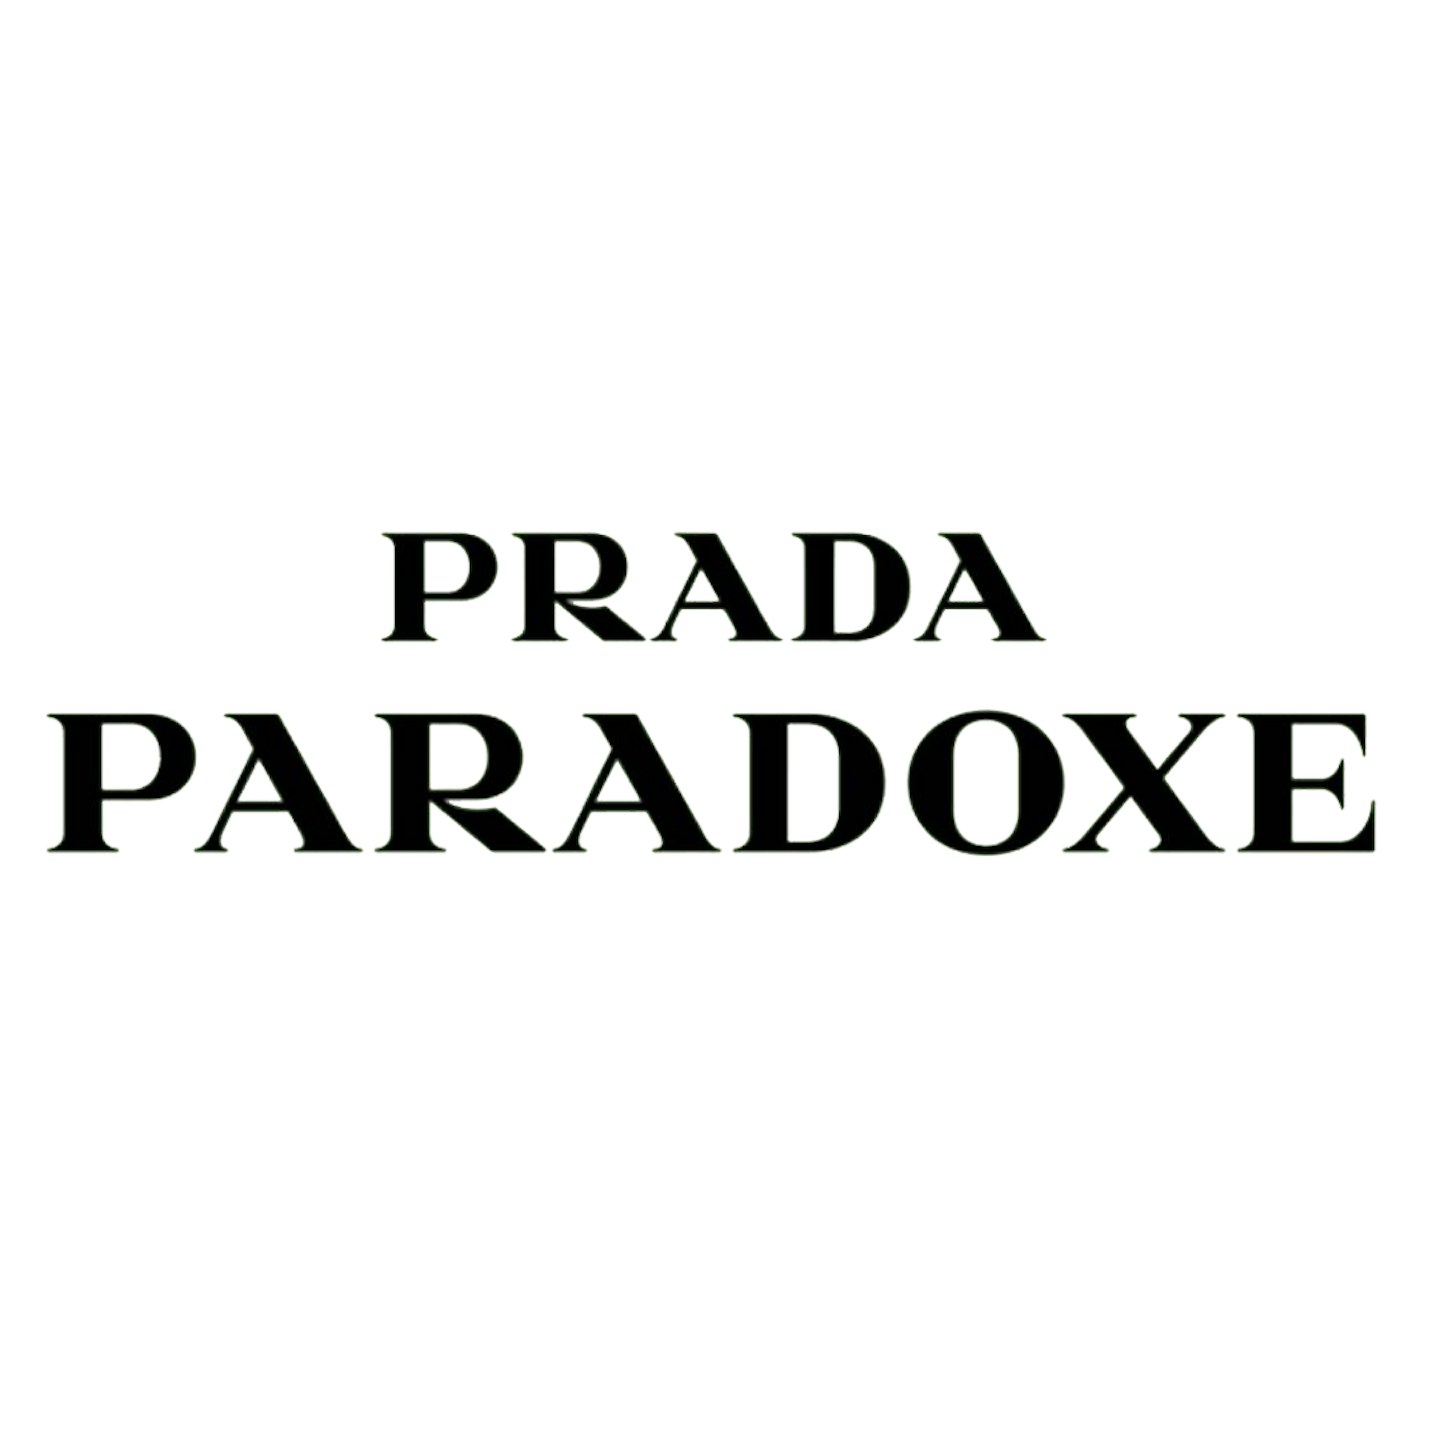 PRADA logo